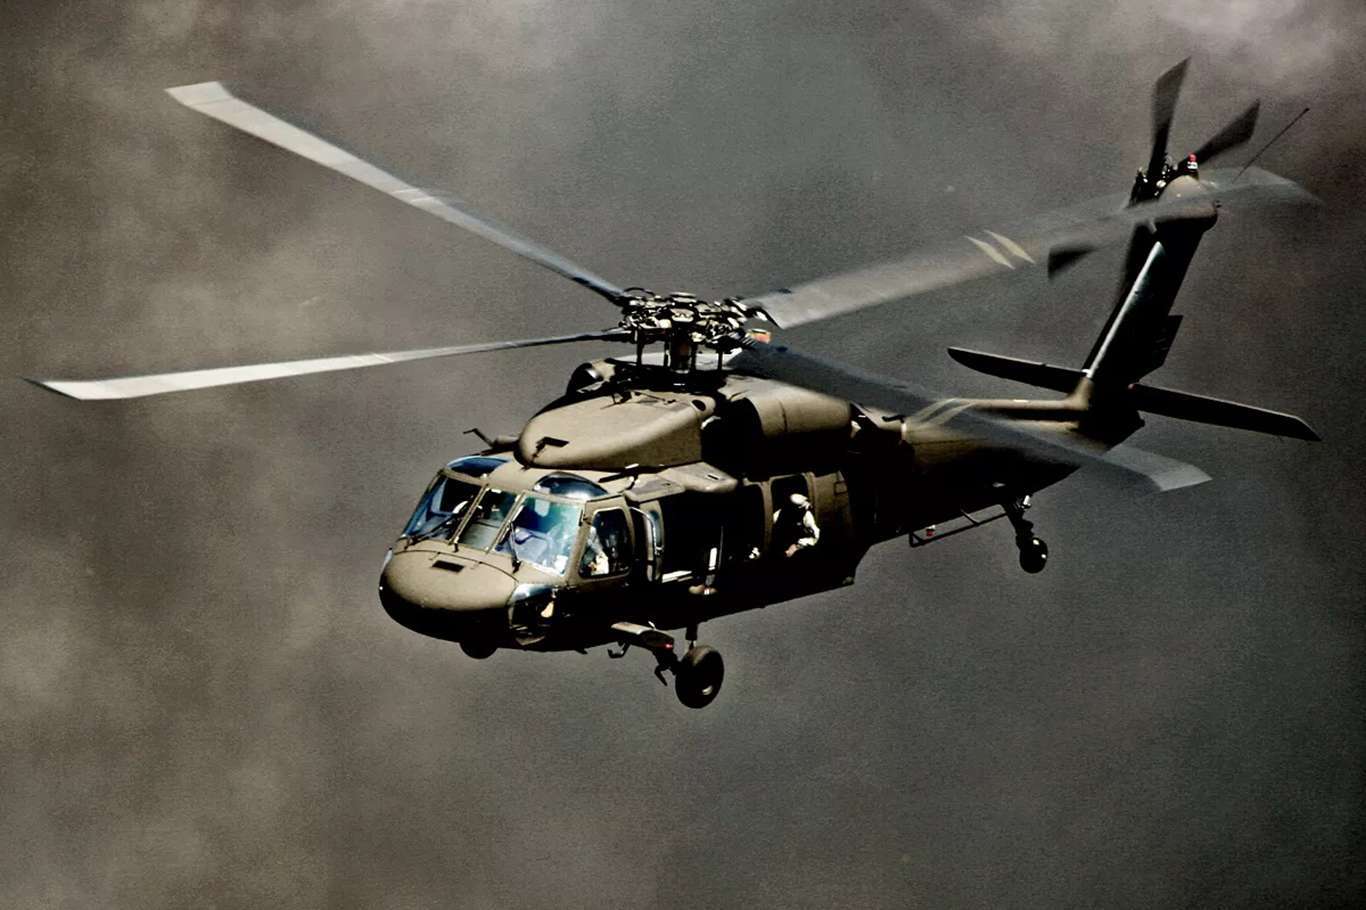 Американские военные вертолеты. Uh-60 Black Hawk. Sikorsky uh-60 Black Hawk. Uh-60 Blackhawk. Американские боевые вертолеты Black Hawk.